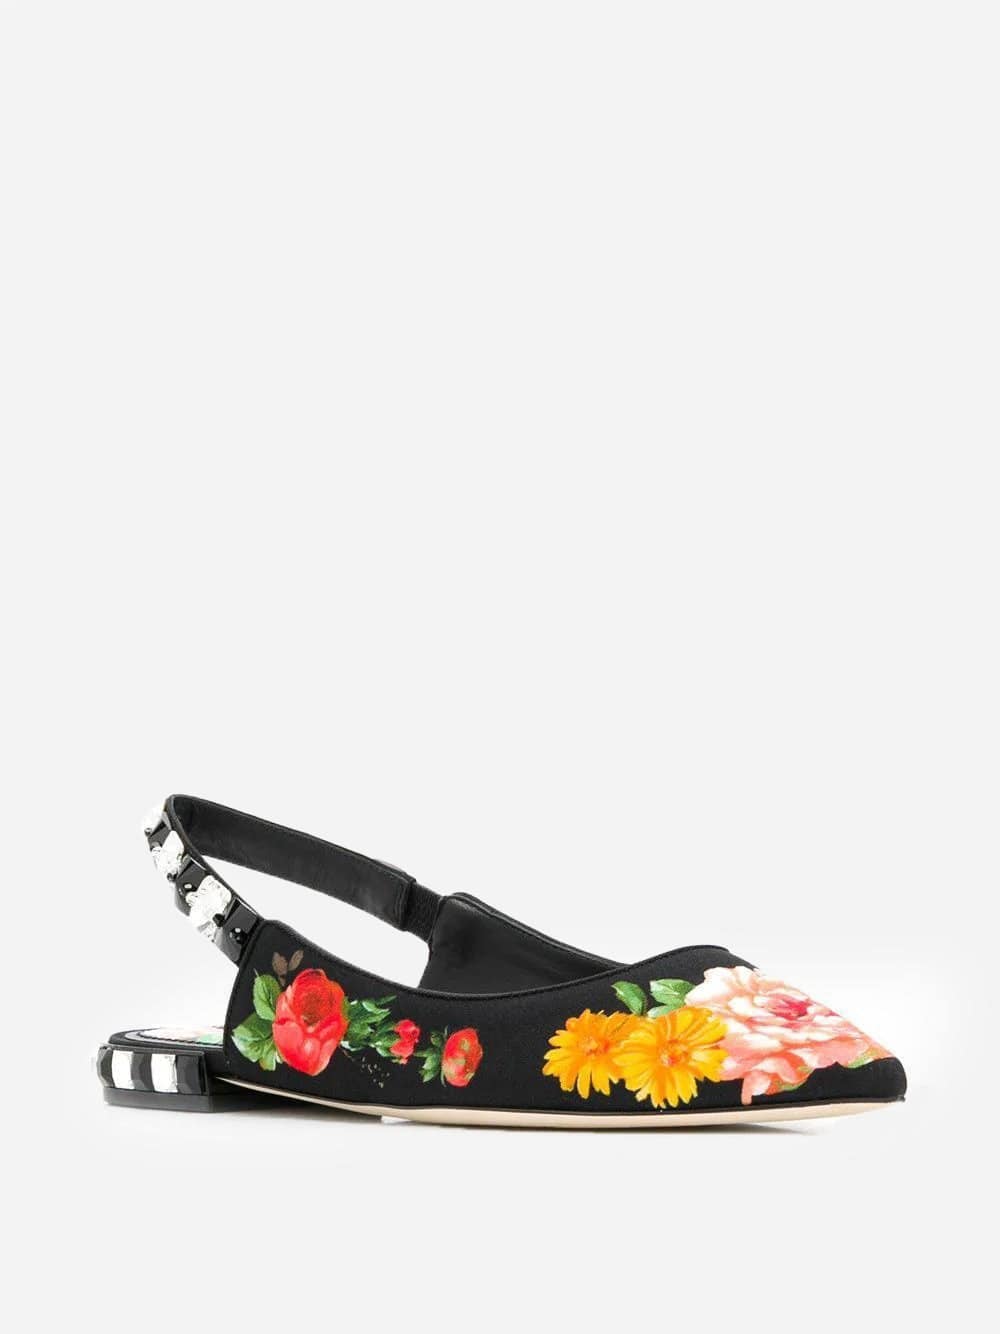 Dolce & Gabbana Floral Embellished Flat Sandals